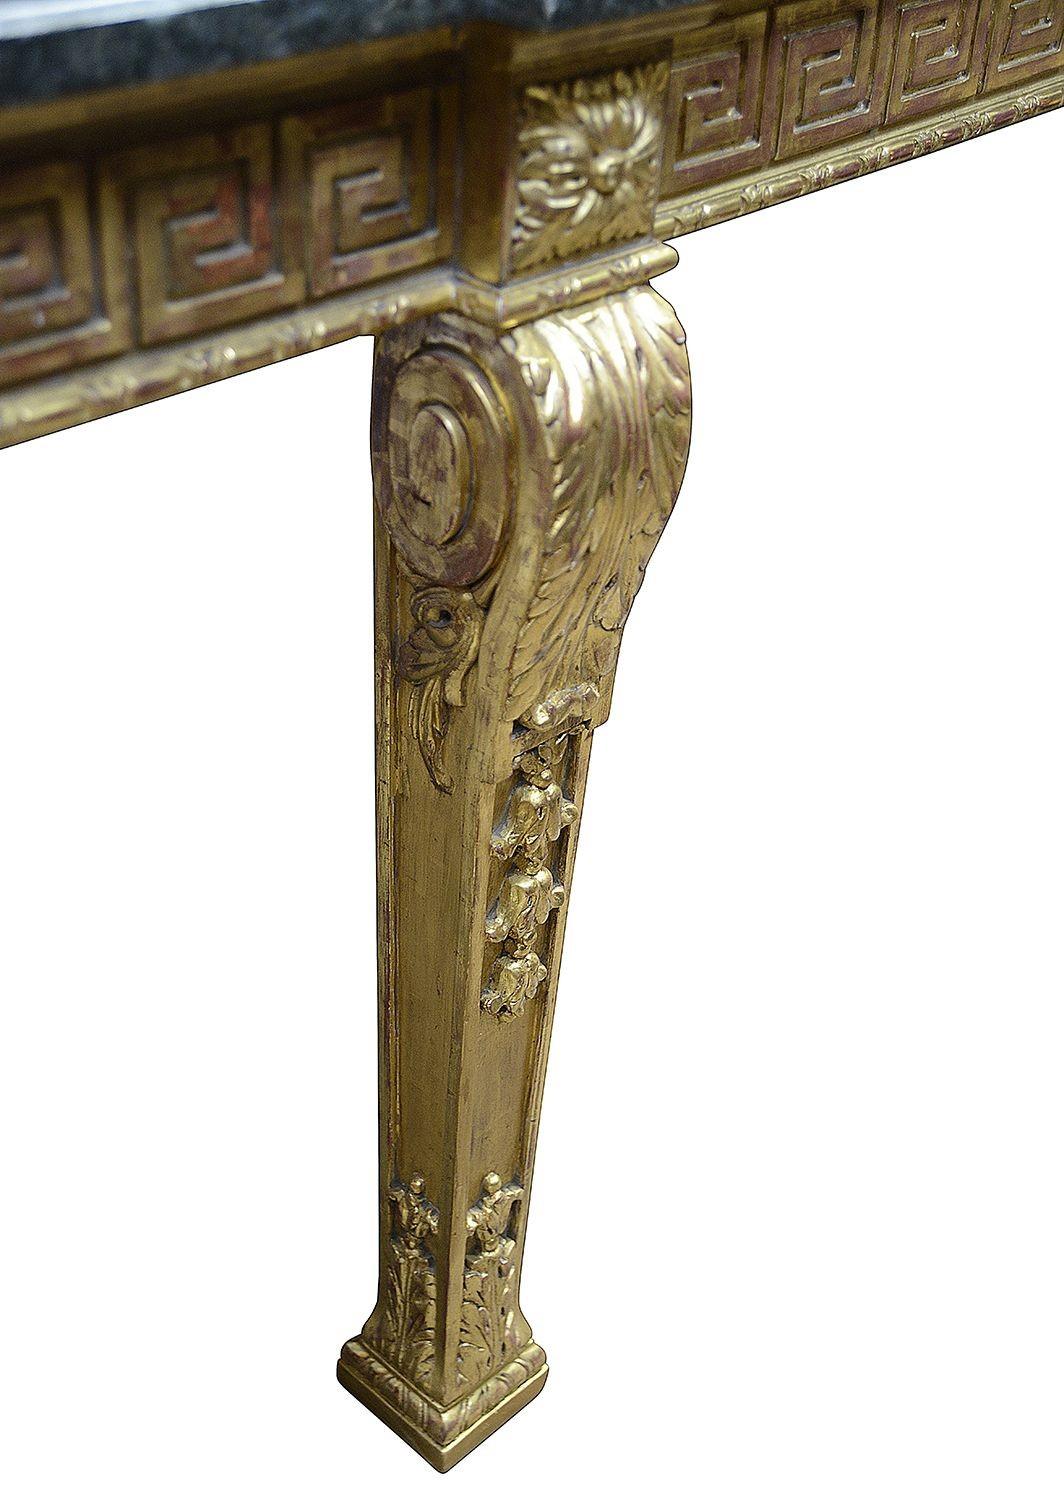 Très bonne table de la fin du XIXe siècle en bois doré sculpté d'influence Adams, avec un motif de clé grecque sur la frise qui comporte un tiroir central, et un décor de feuilles d'acanthe sur le dessus des quatre pieds fuselés de section